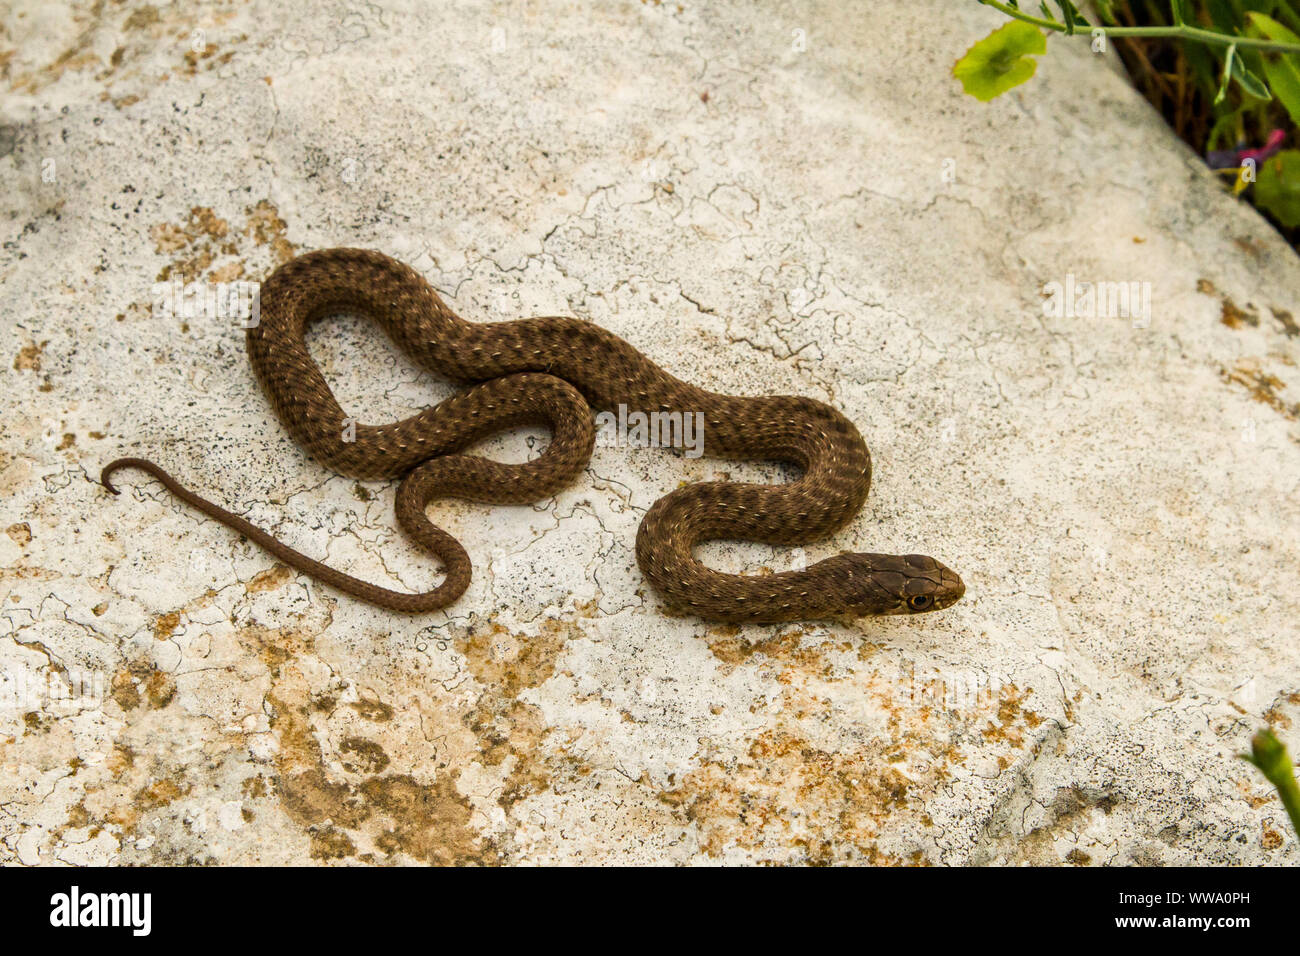 Montpellier snake (Malpolon monspessulanus) Stock Photo